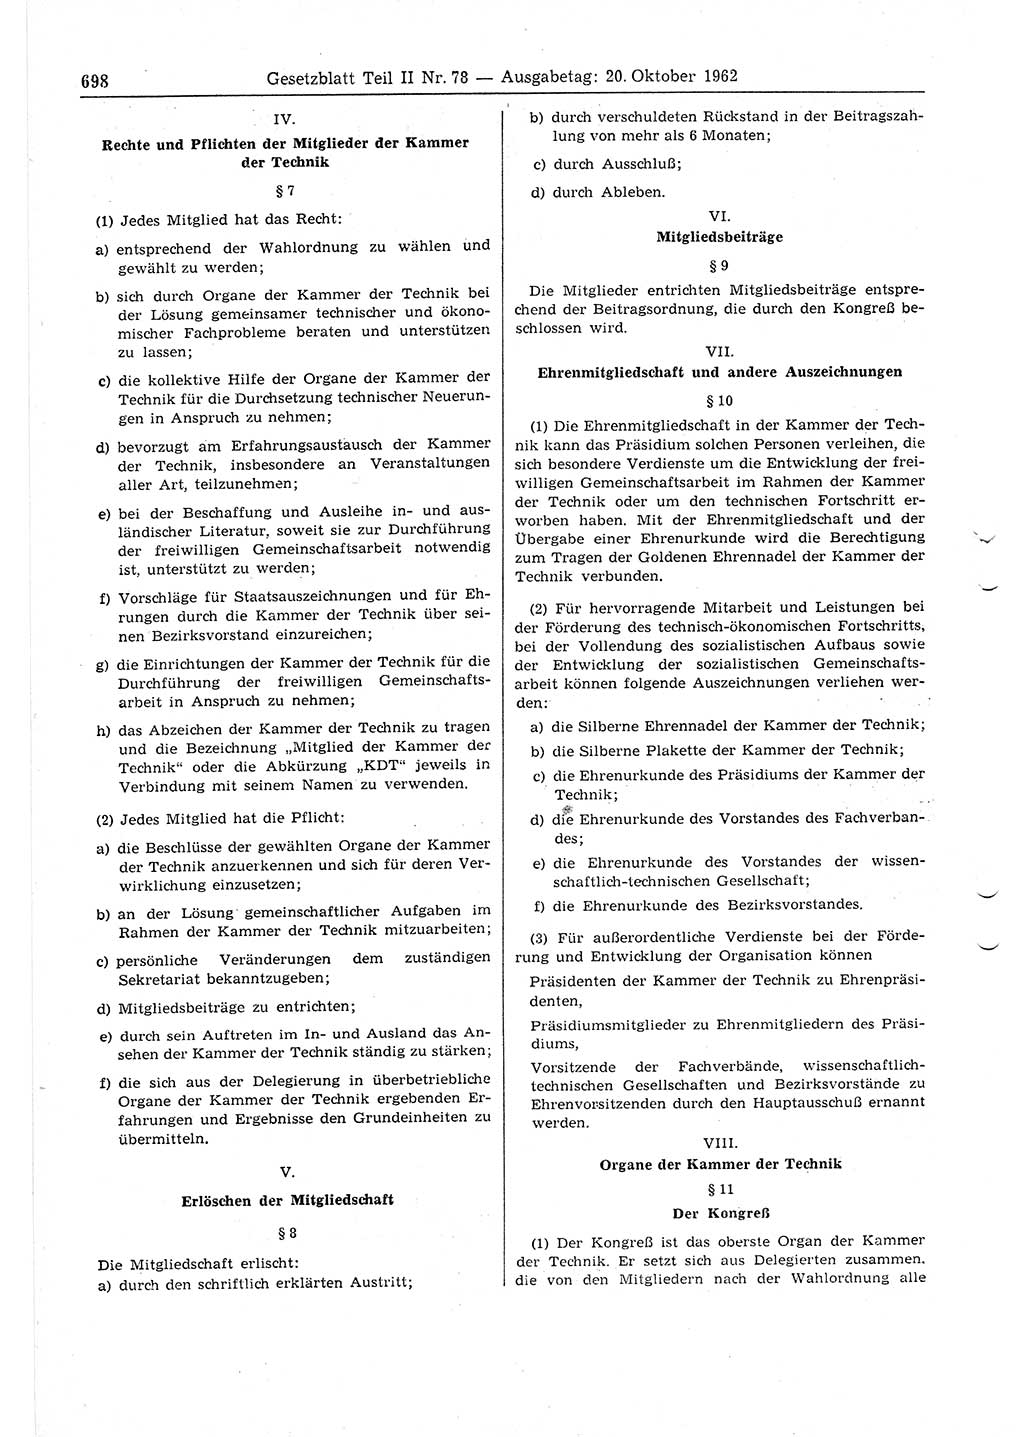 Gesetzblatt (GBl.) der Deutschen Demokratischen Republik (DDR) Teil ⅠⅠ 1962, Seite 698 (GBl. DDR ⅠⅠ 1962, S. 698)